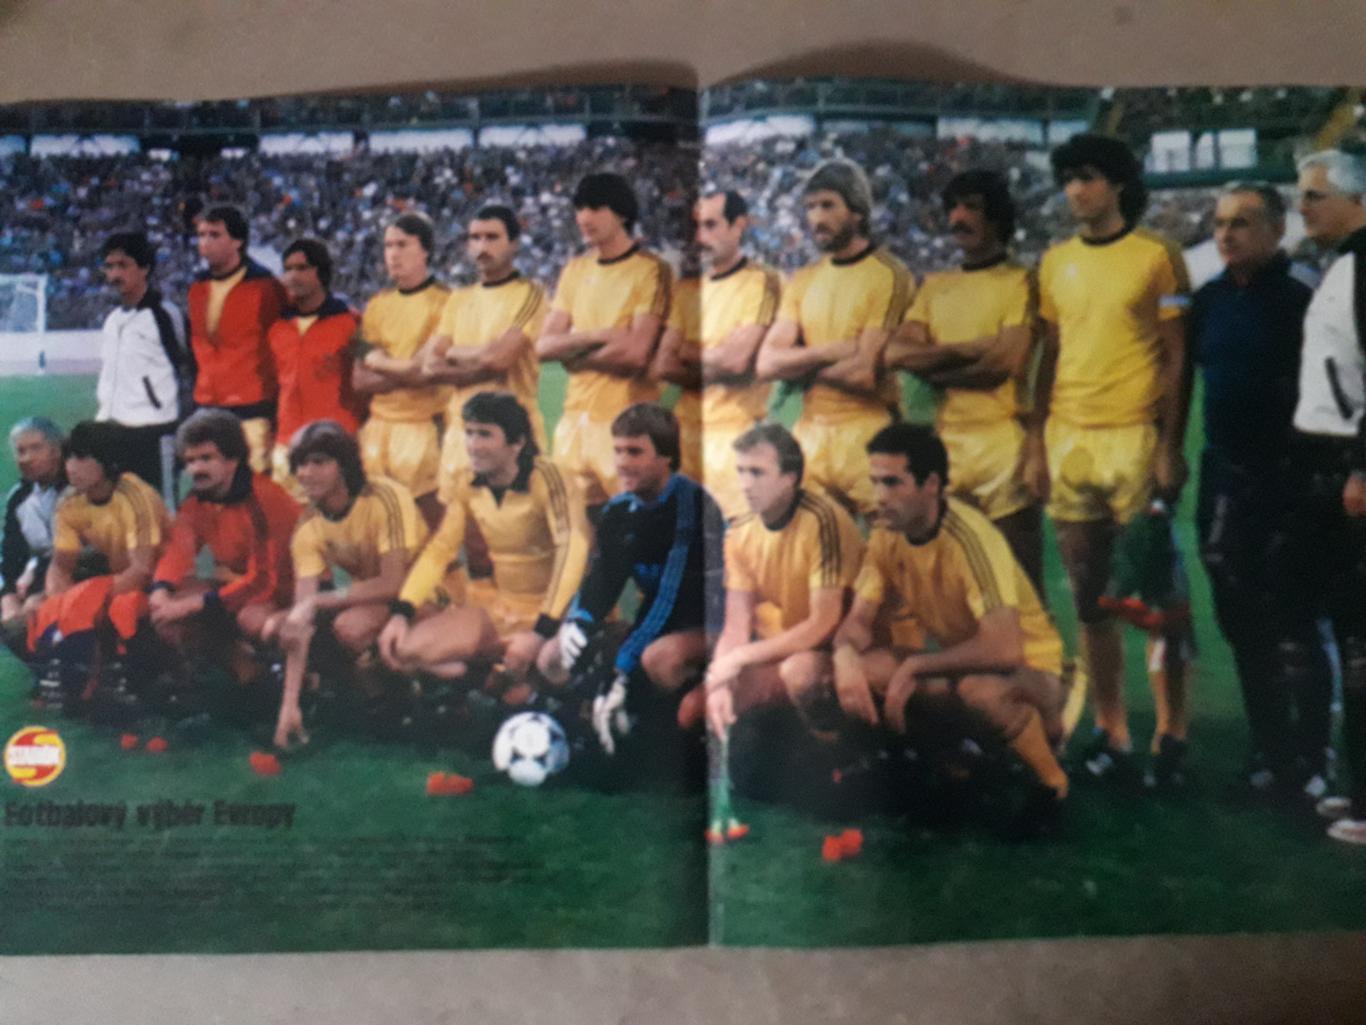 Плакат из журнала Stadion- Выбор Европы 1981 г.